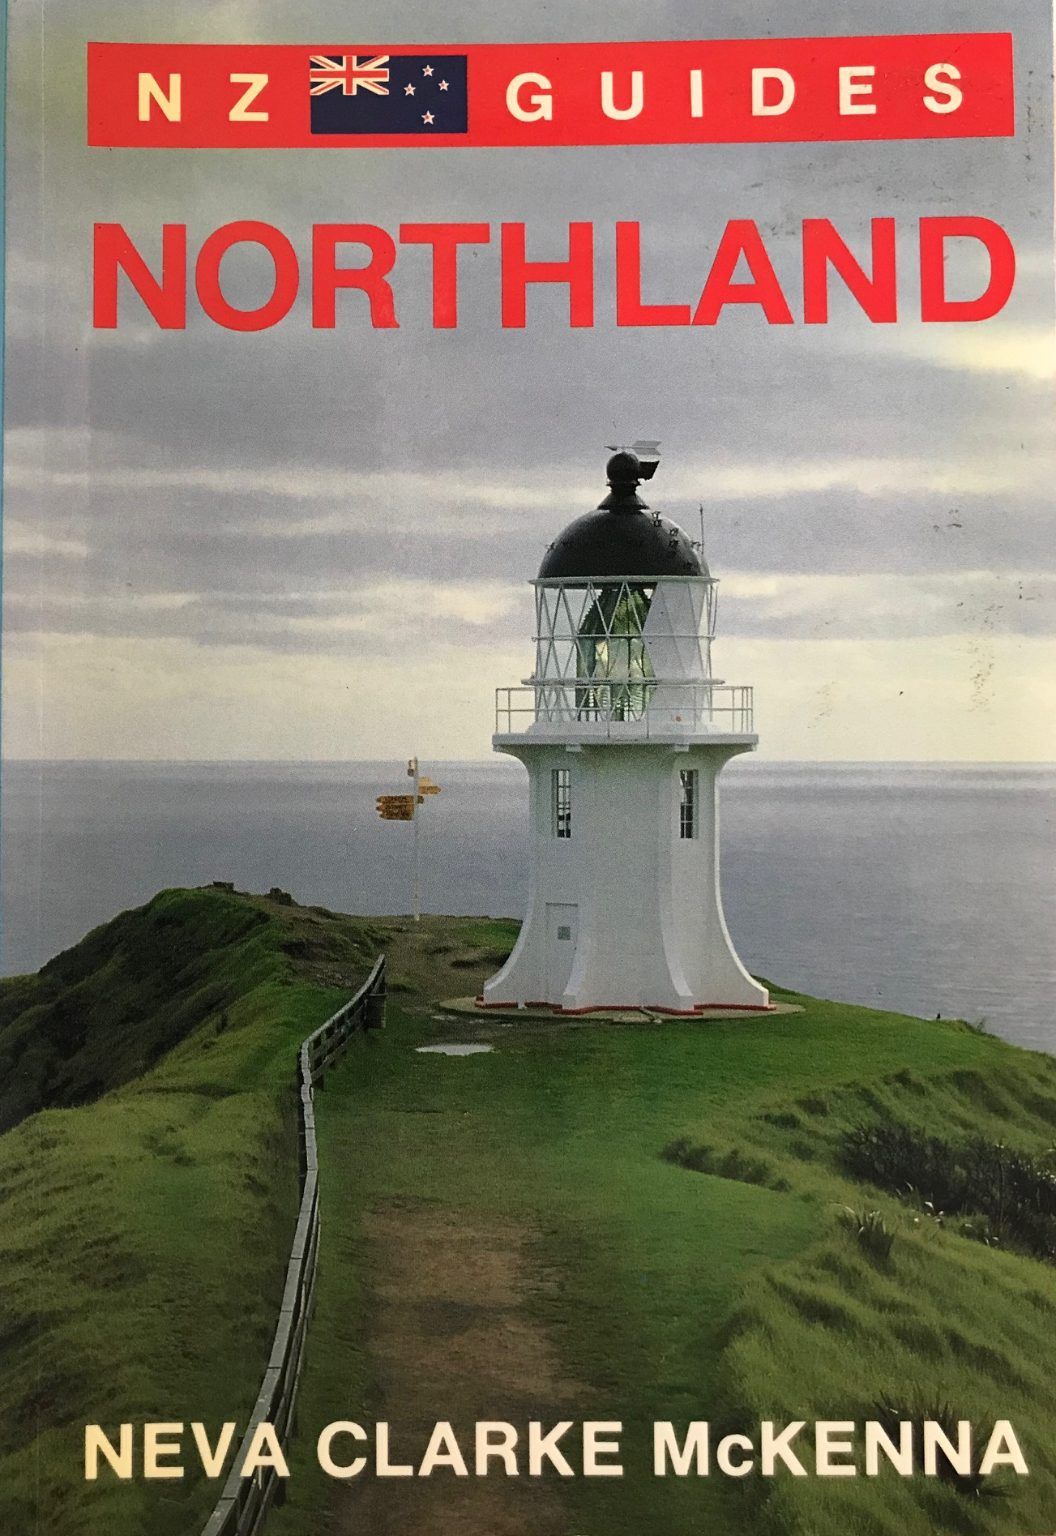 NZ GUIDES: Northland